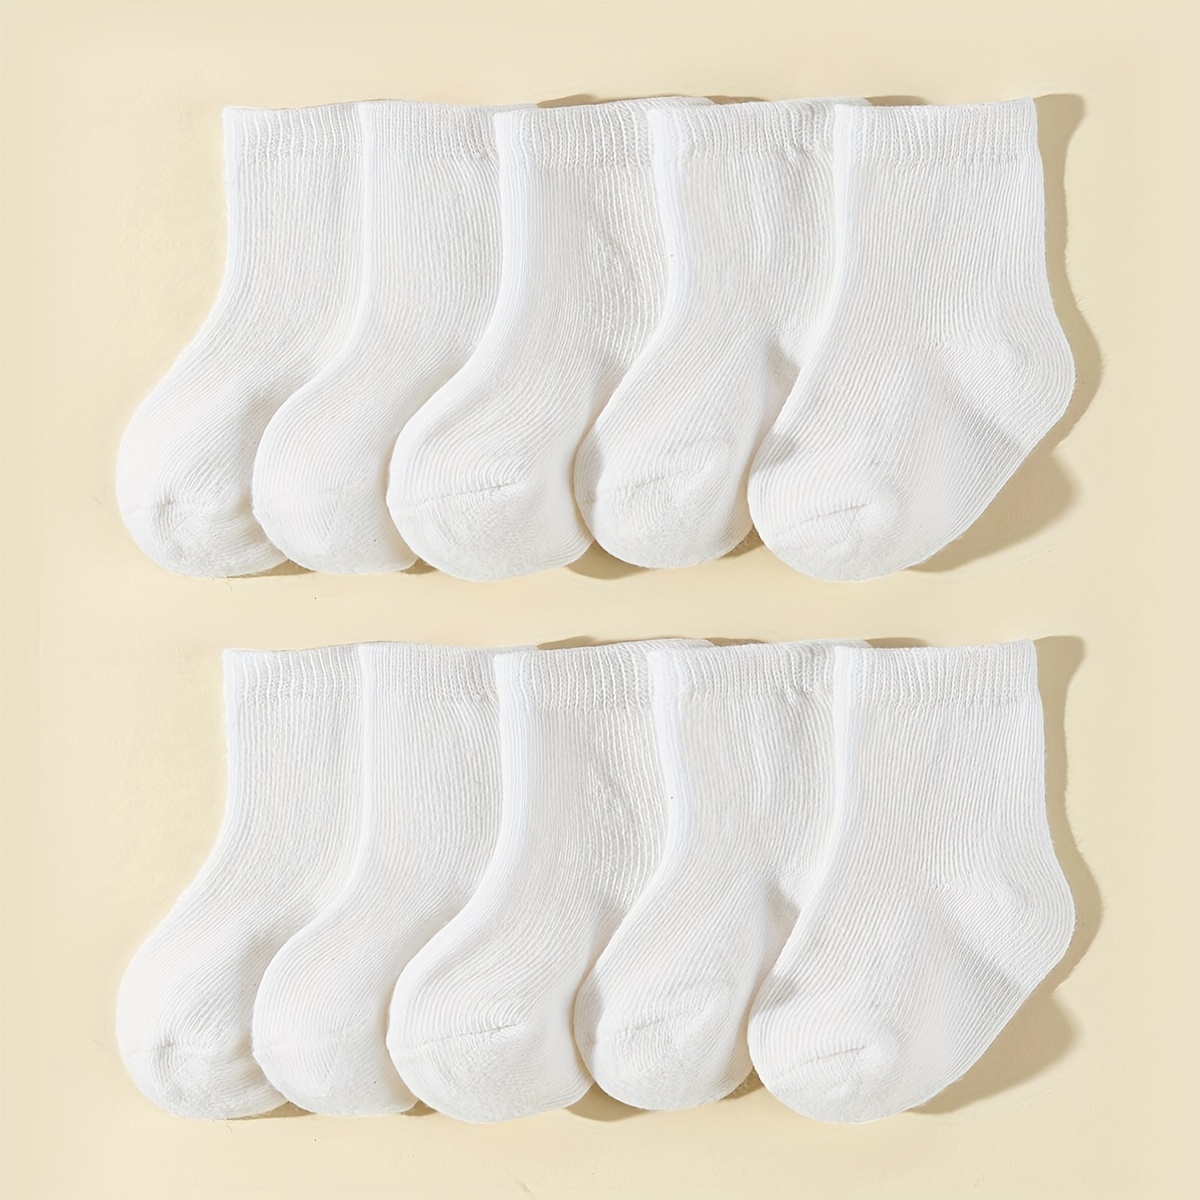 

10pairs Baby Boys Girls White Cotton Blend Breathable Short Crew Socks Infant Newborn Toddlers Mid Tube Socks For 4 Seasons